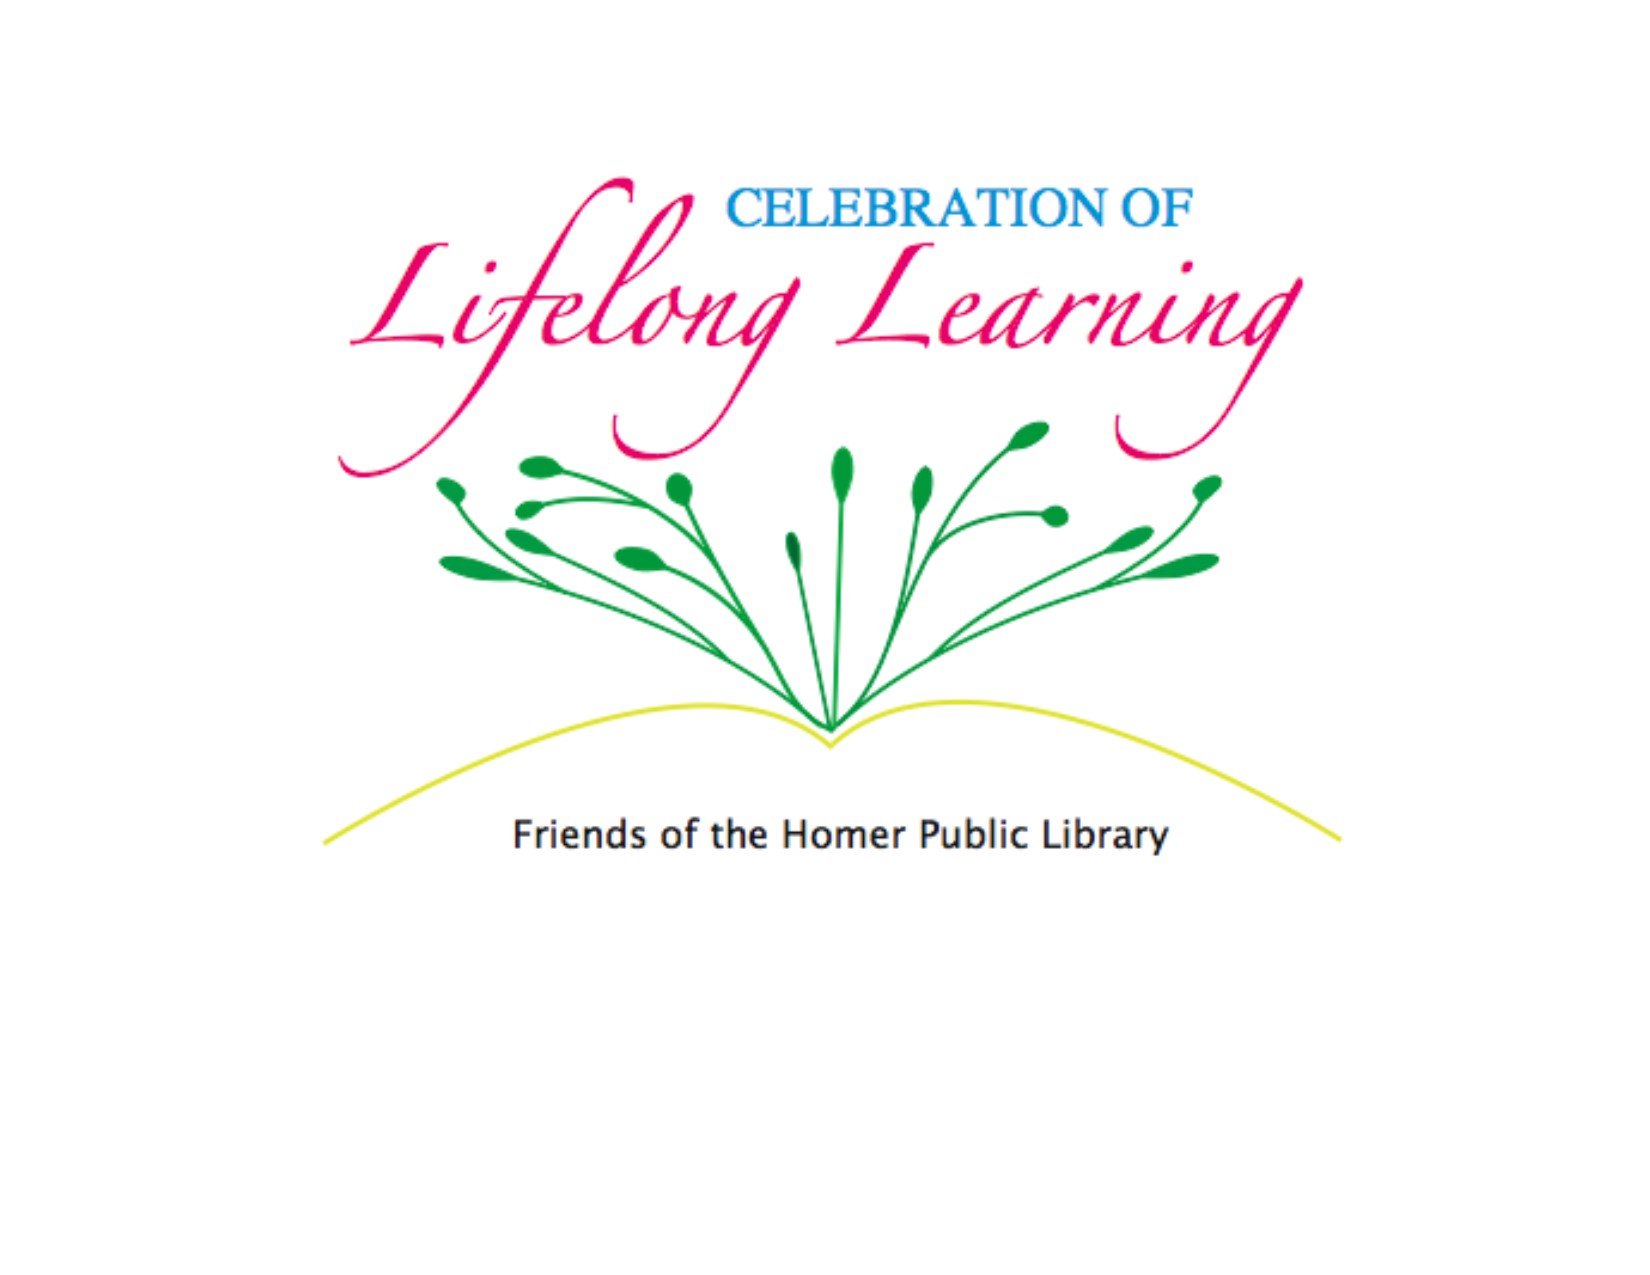 Celebration of Lifelong Learning